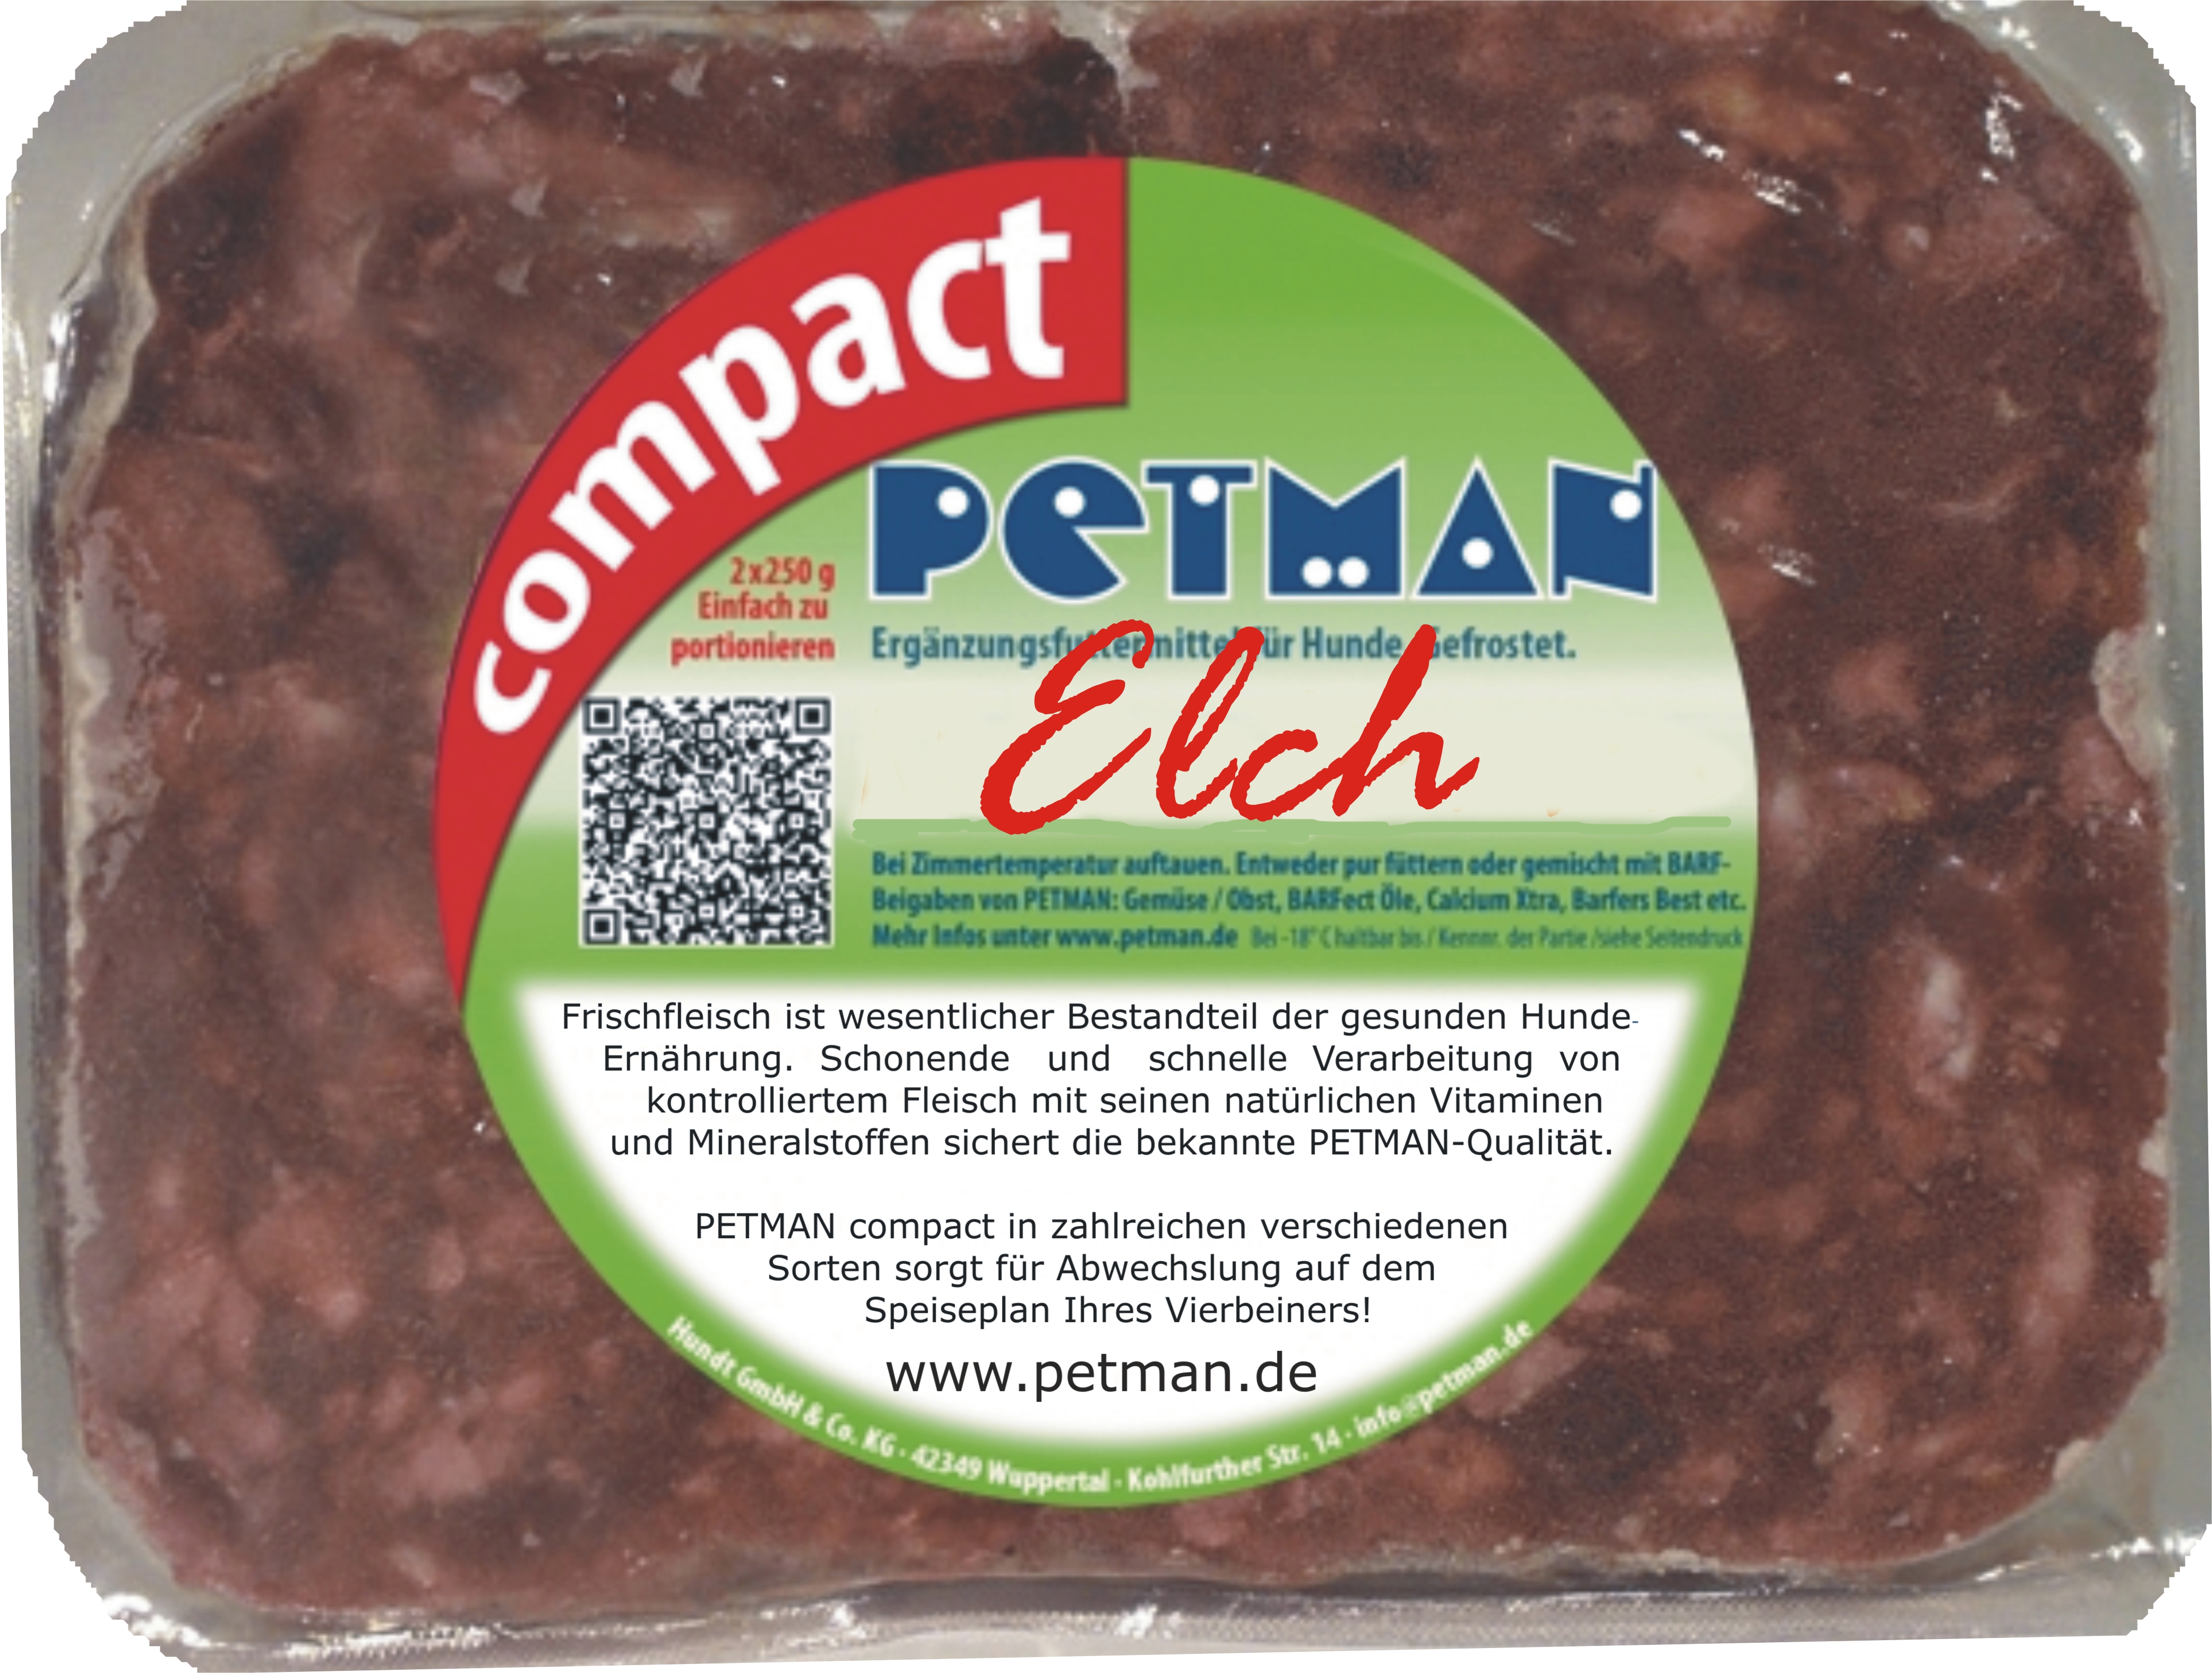 Petman compact Elch